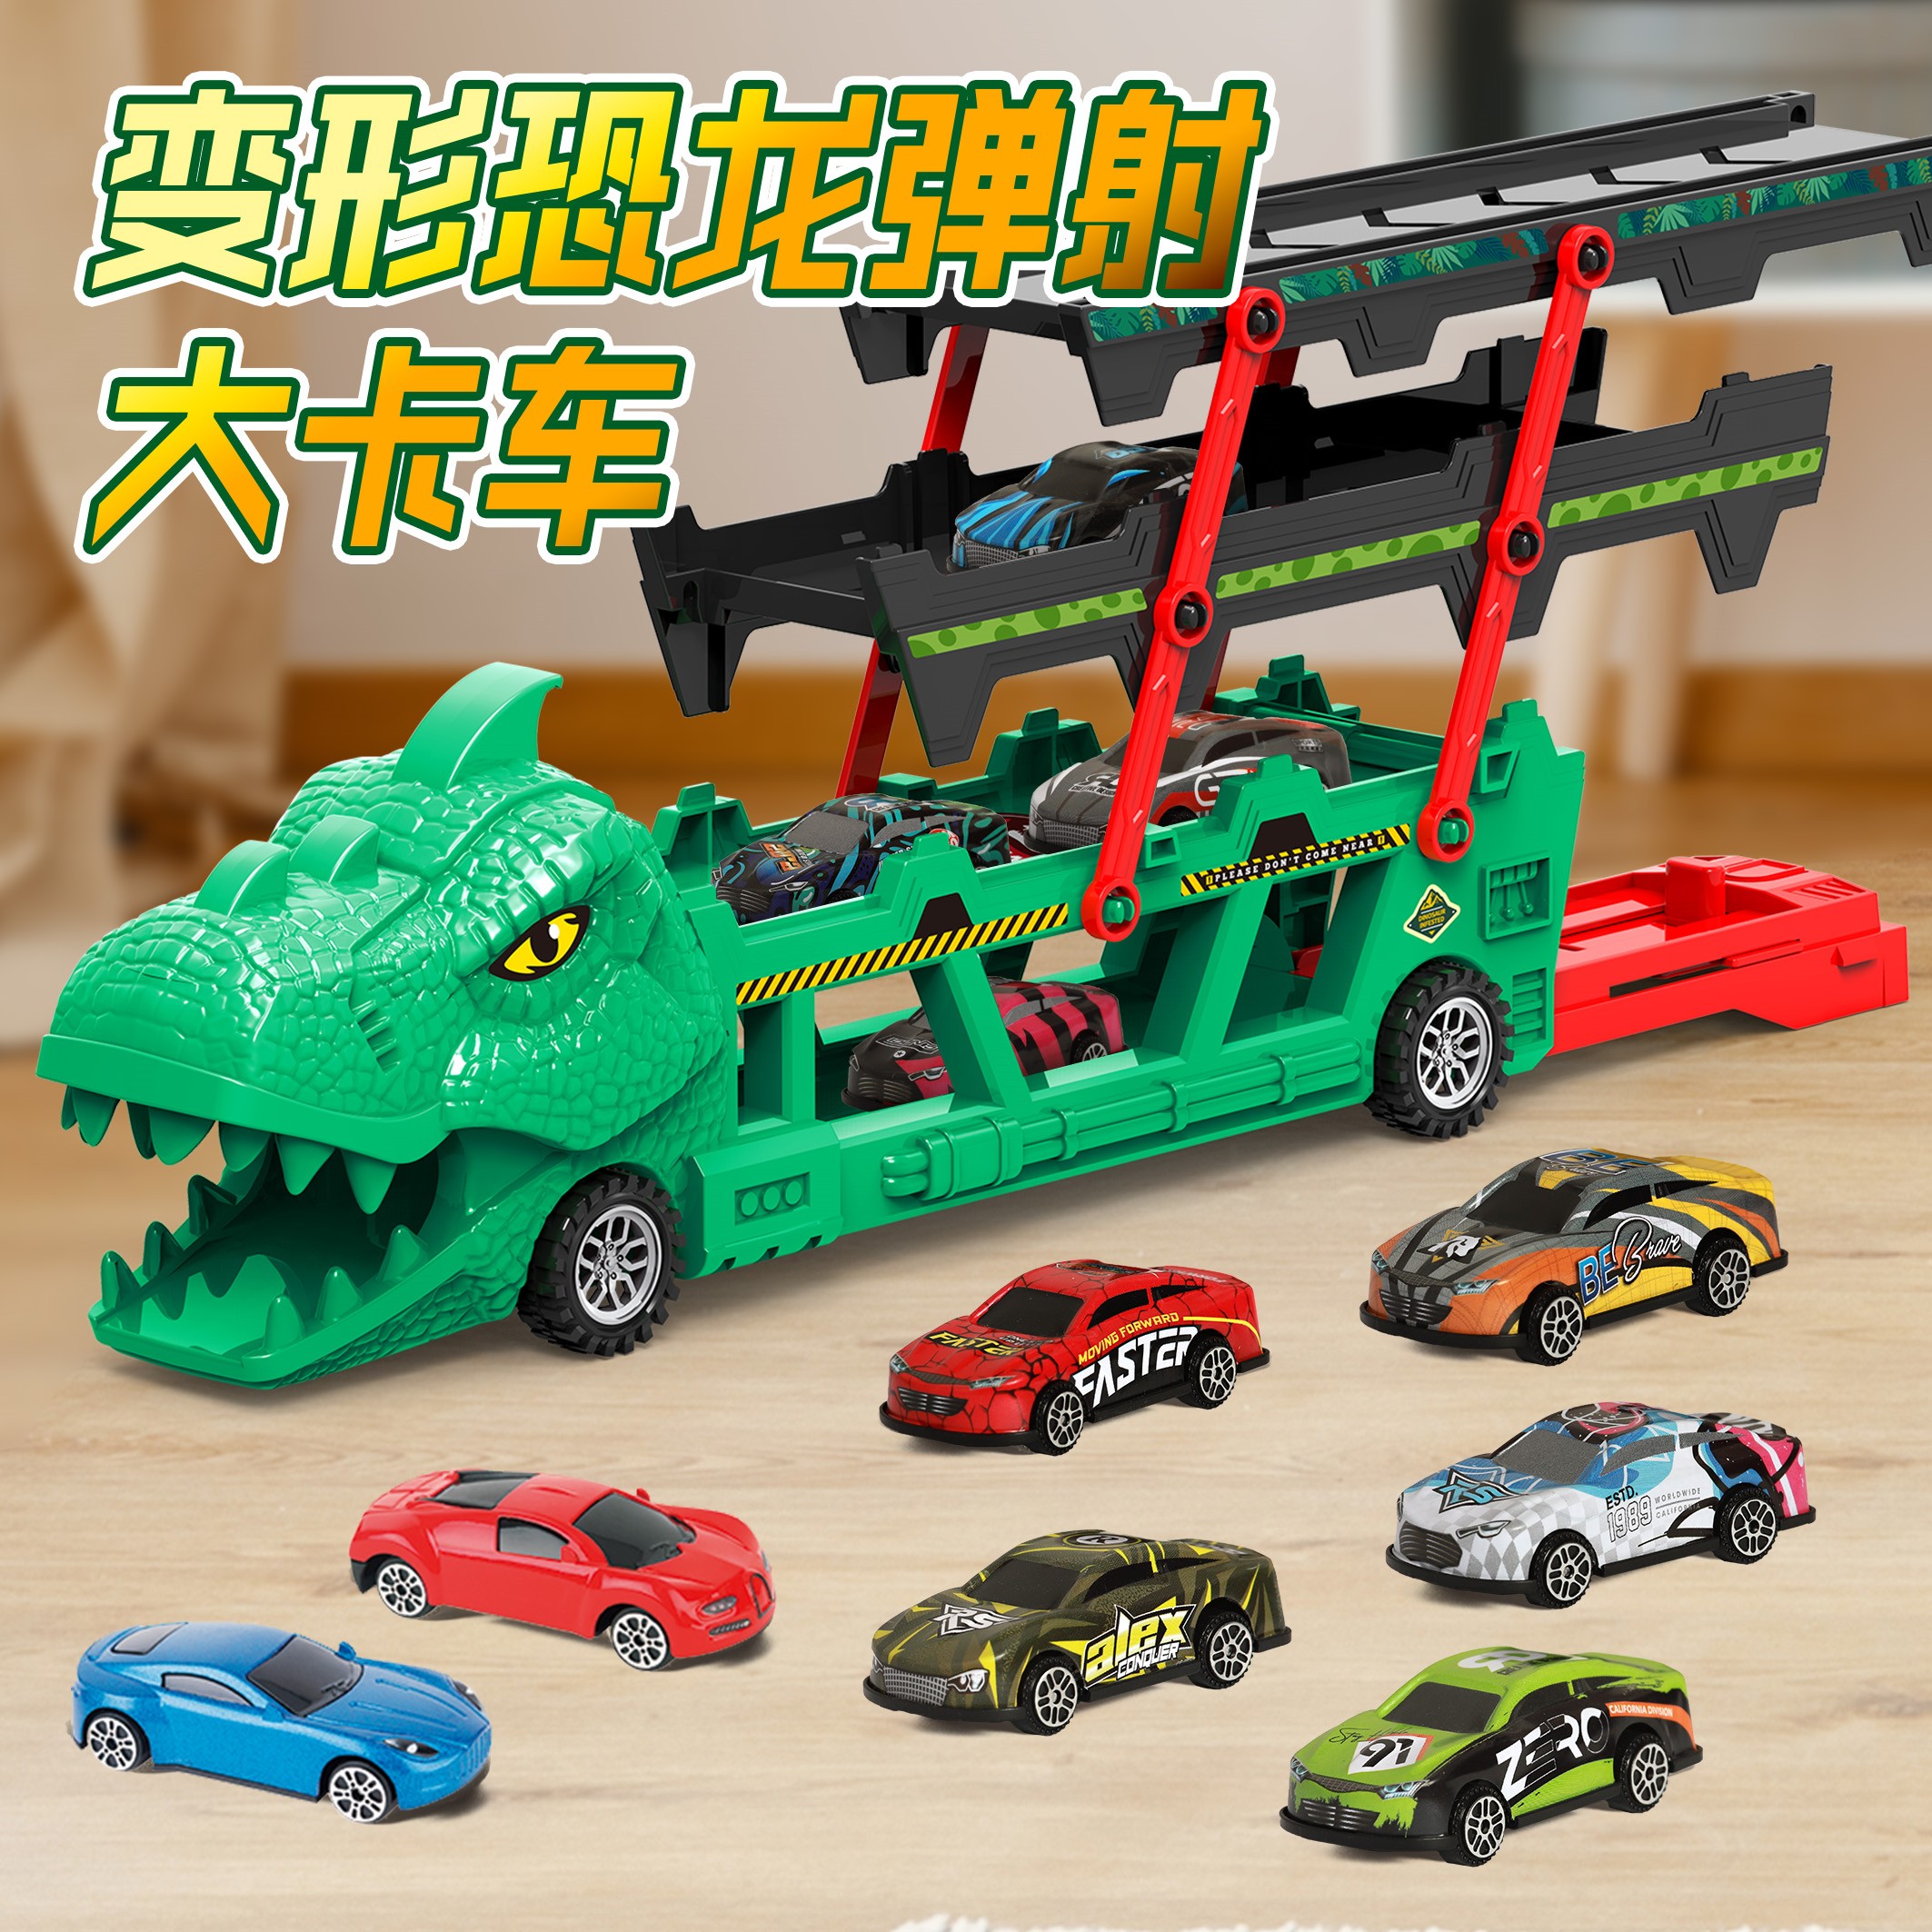 超大号变形恐龙收纳折叠轨道玩具合金弹射小汽车男孩滑行塞车礼物